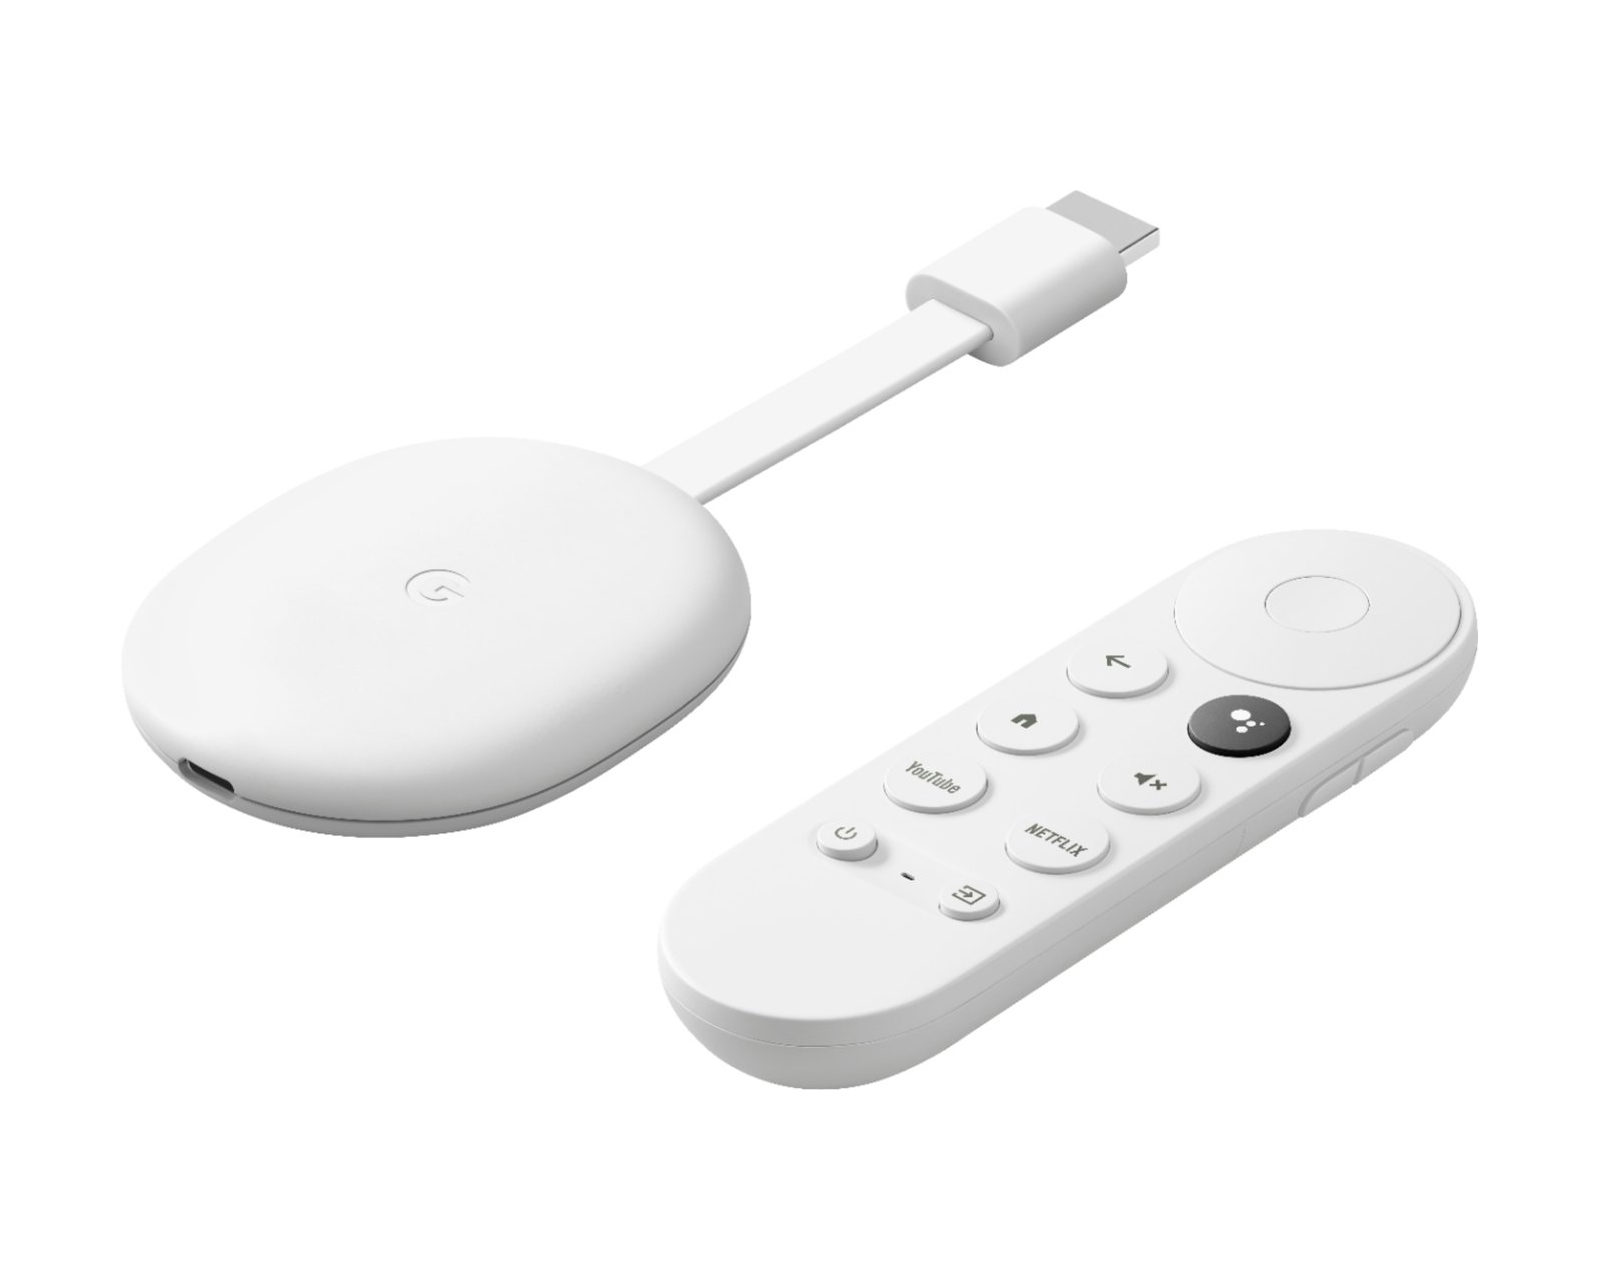 Forstyrret indtryk magnet Google Chromecast med Google TV, Media-Player, 4k - Hvid - MaxGaming.dk